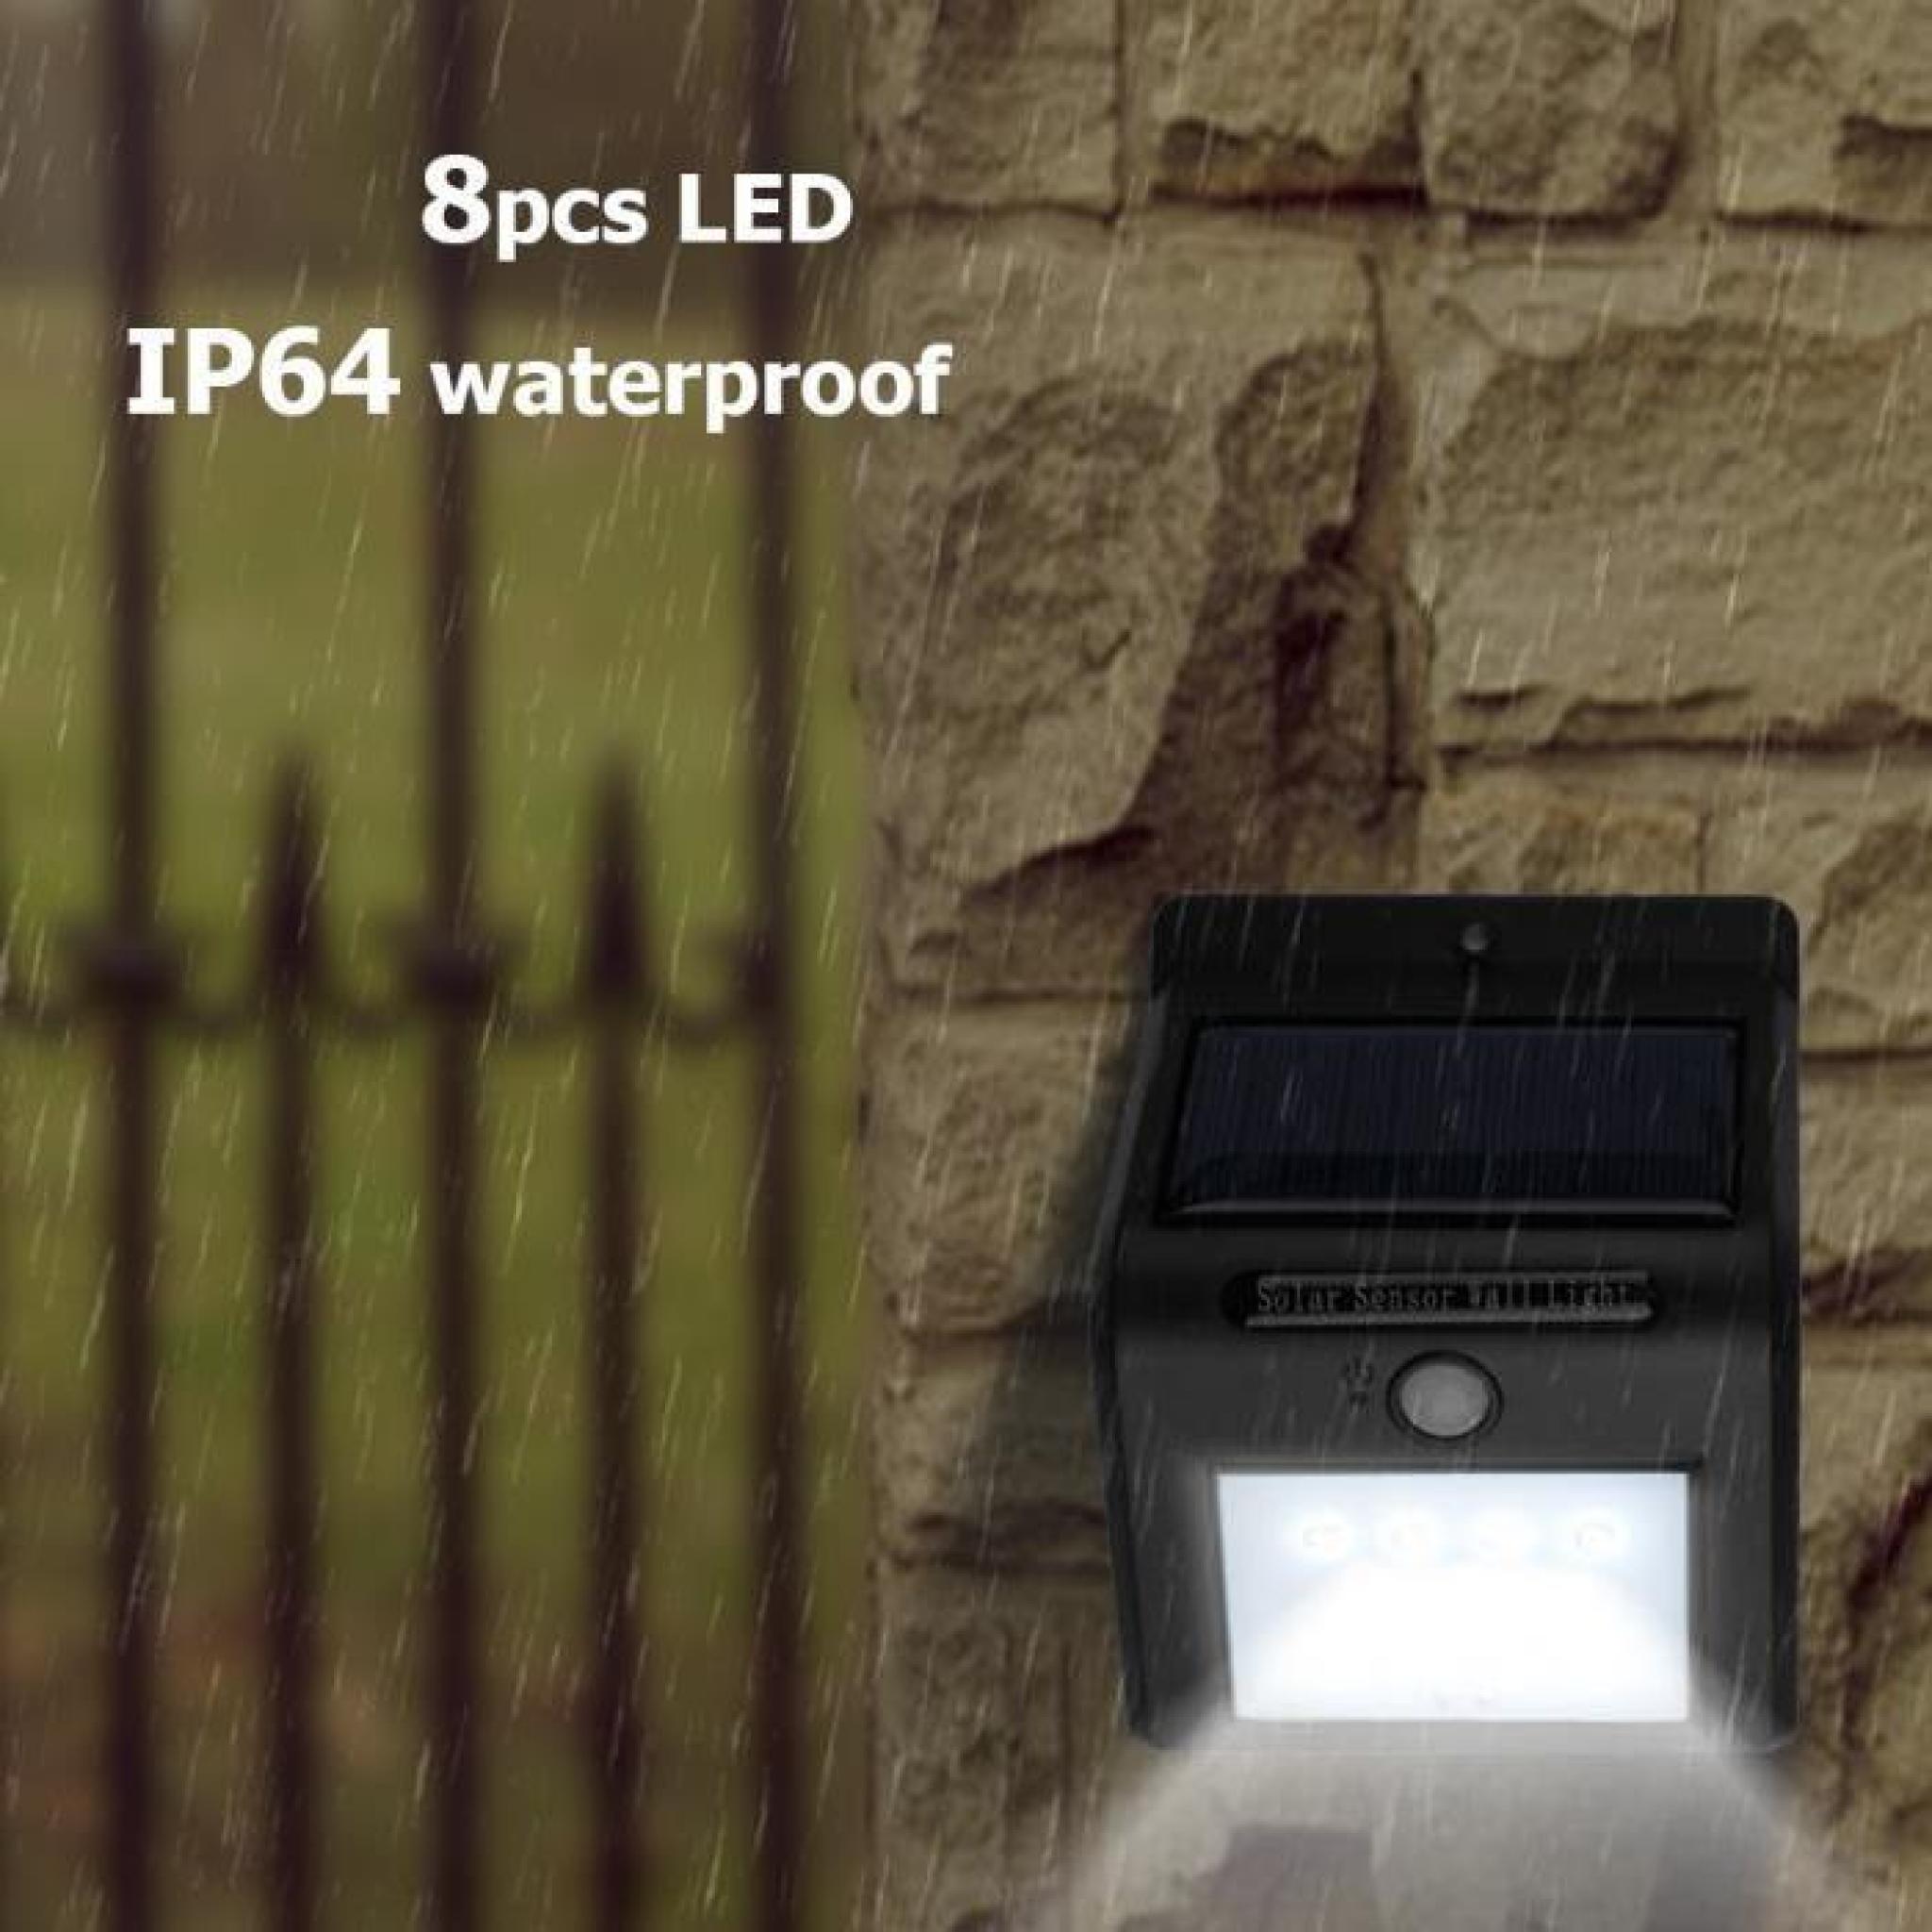 étanche IP64 8 SMD LED Lampe murale solaire Extérieur Applique murale capteur de mouvement pour clôture patios jardin jardin toit pas cher